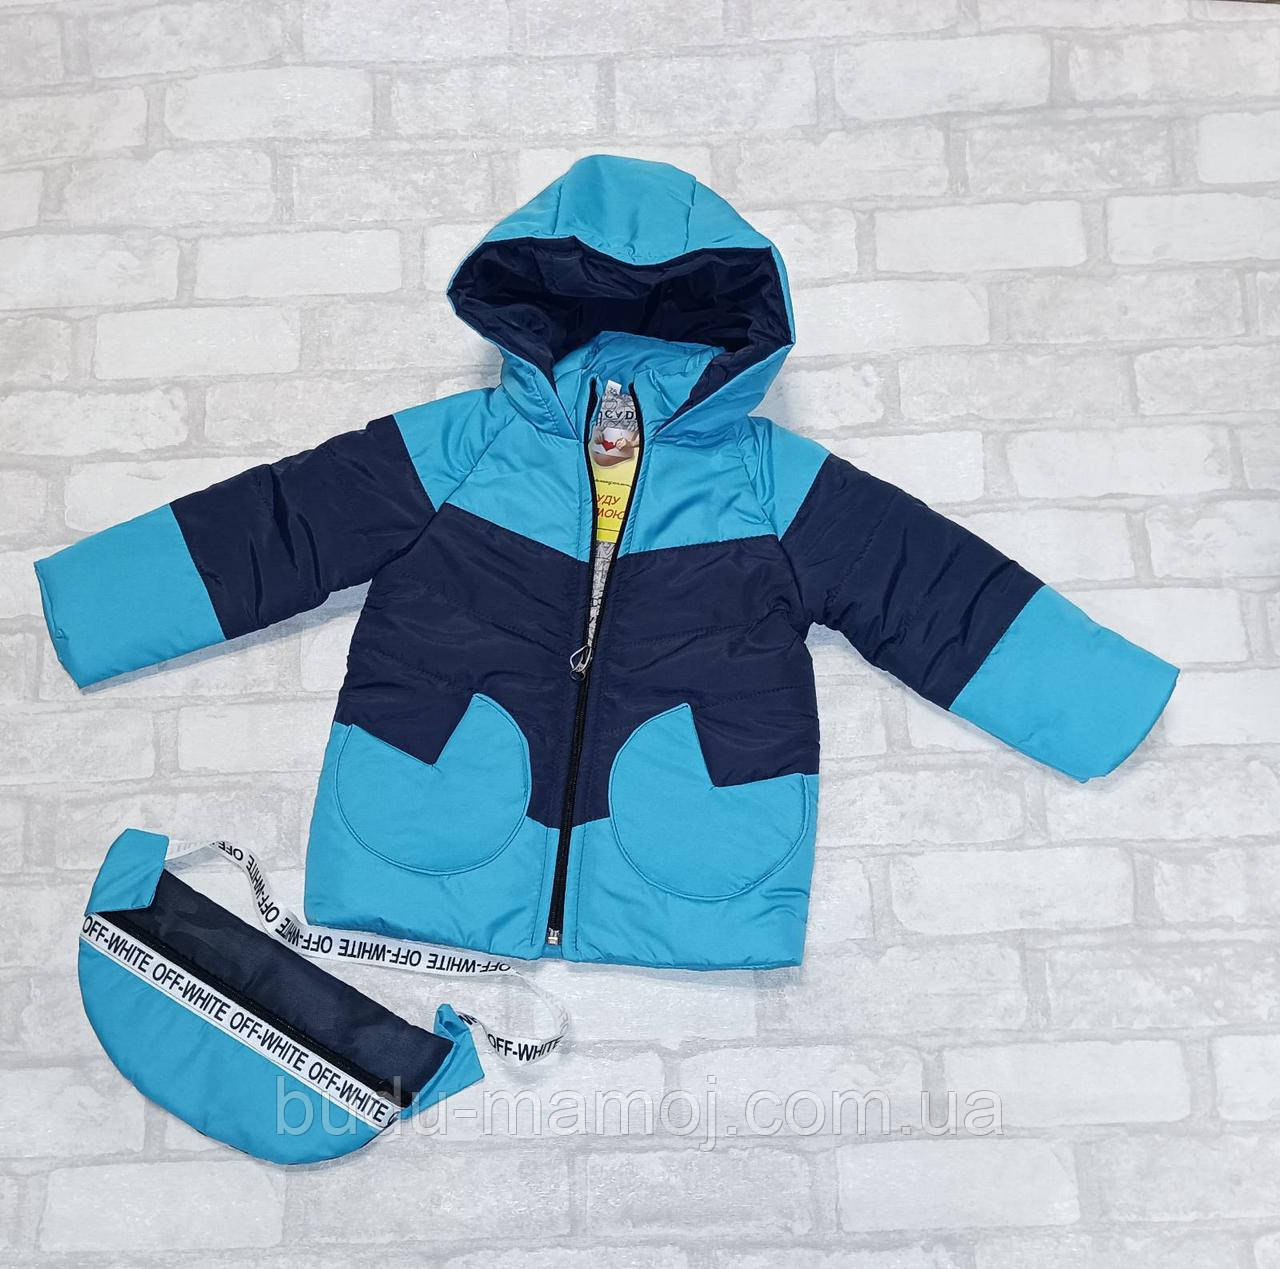 Куртка дитяча Осінь Зима 104 р. 3-4 року синя з сумкою бананка в подарунок